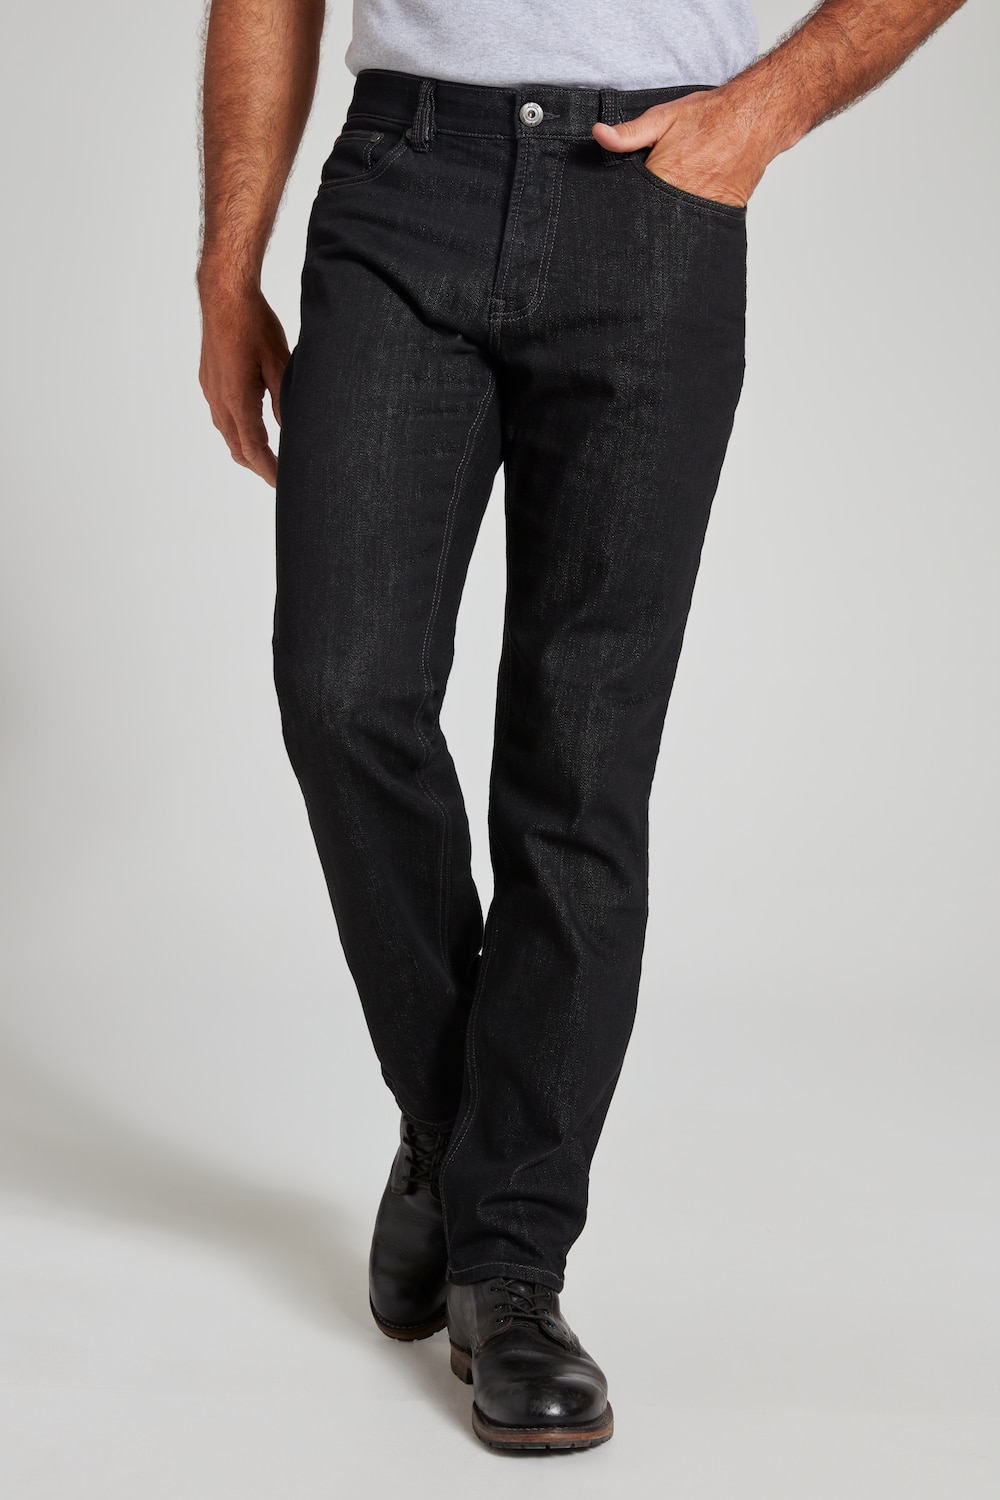 Große Größen Jeans, Herren, schwarz, Größe: 30, Baumwolle, JP1880 von JP1880